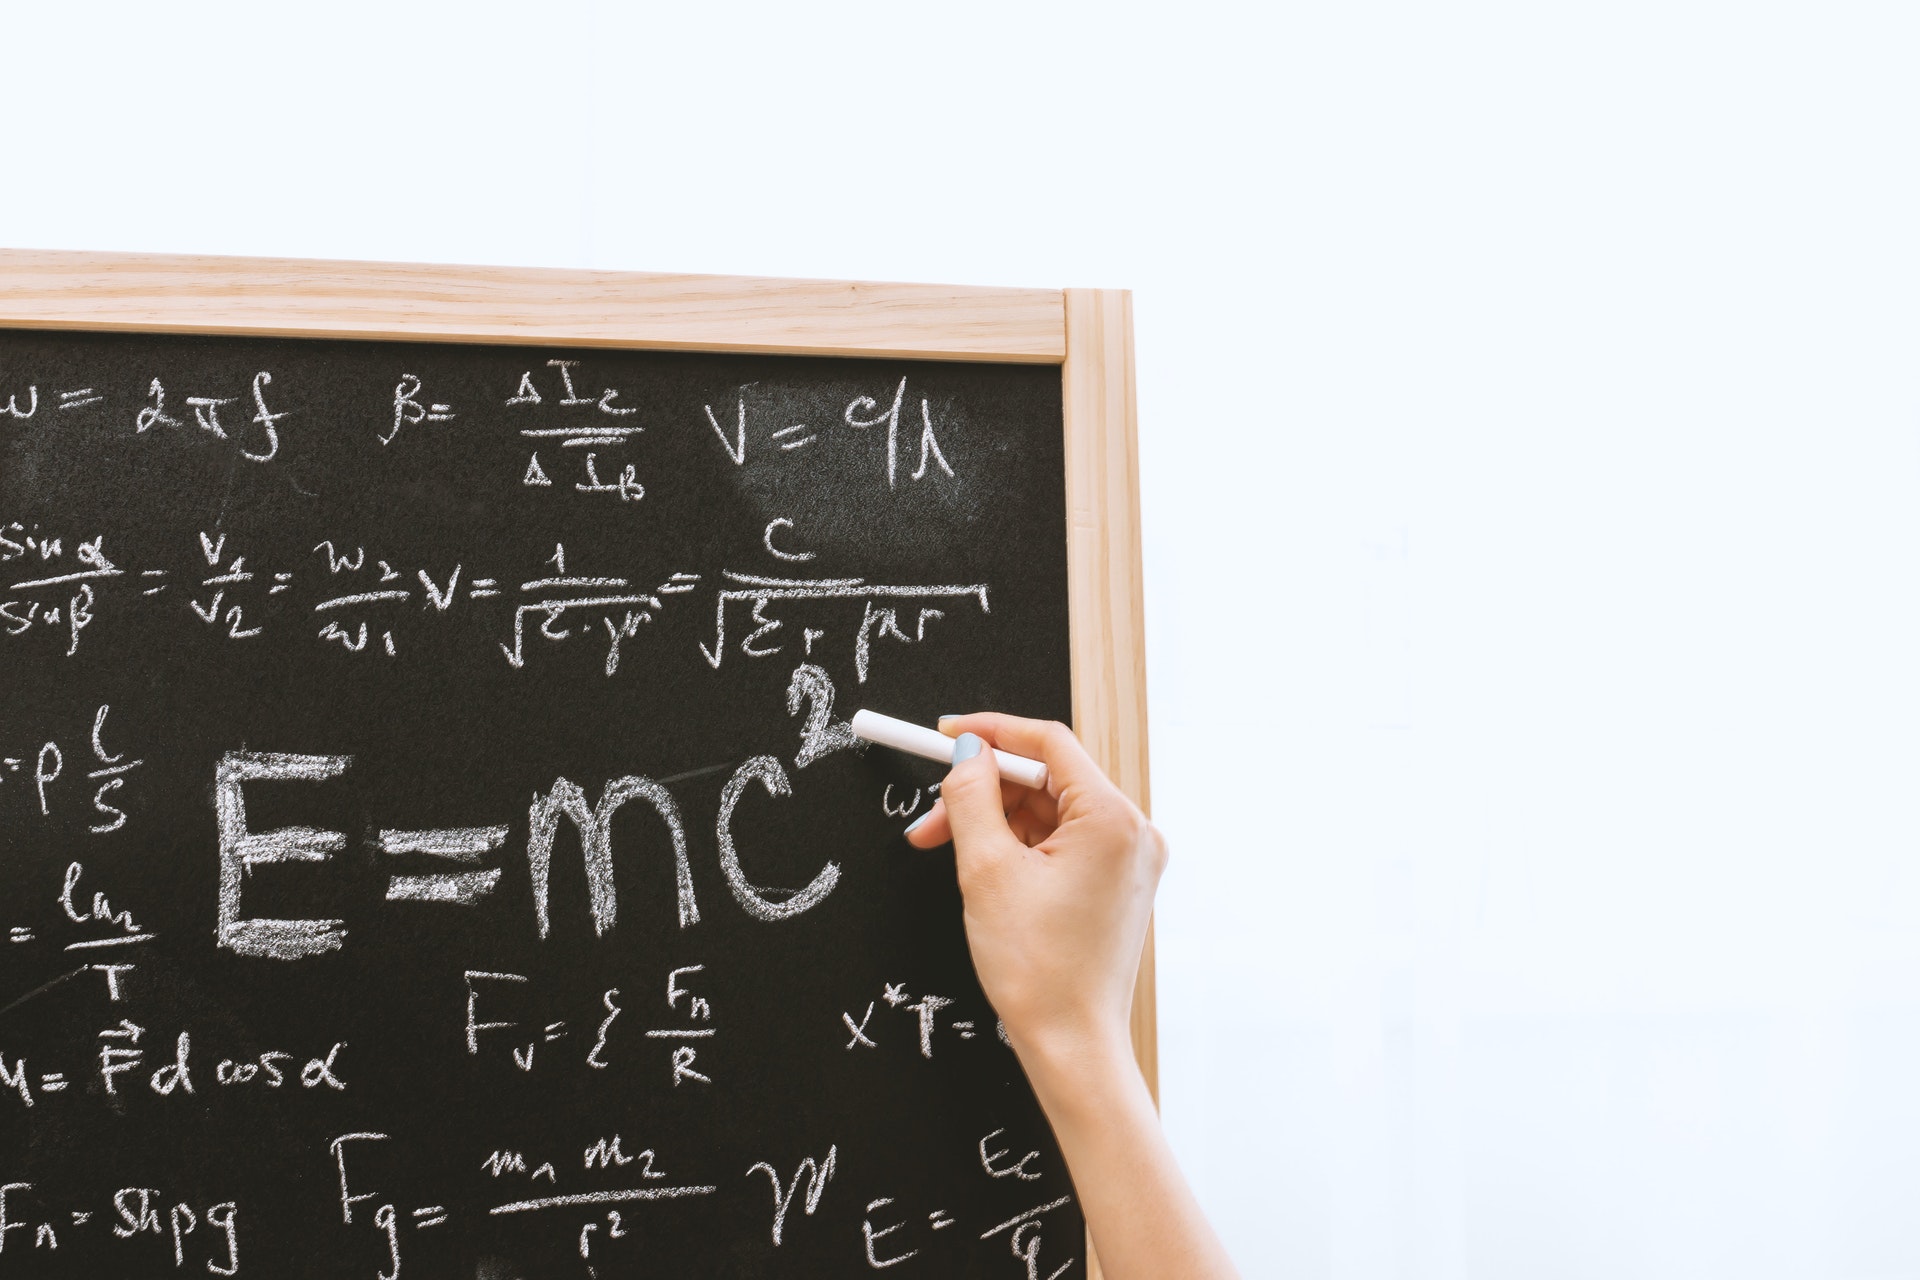 Mão escrevendo em um quadro com um giz e várias fórmulas matemáticas no quadro. Imagem ilustrativa do texto curso de matemática para crianças.